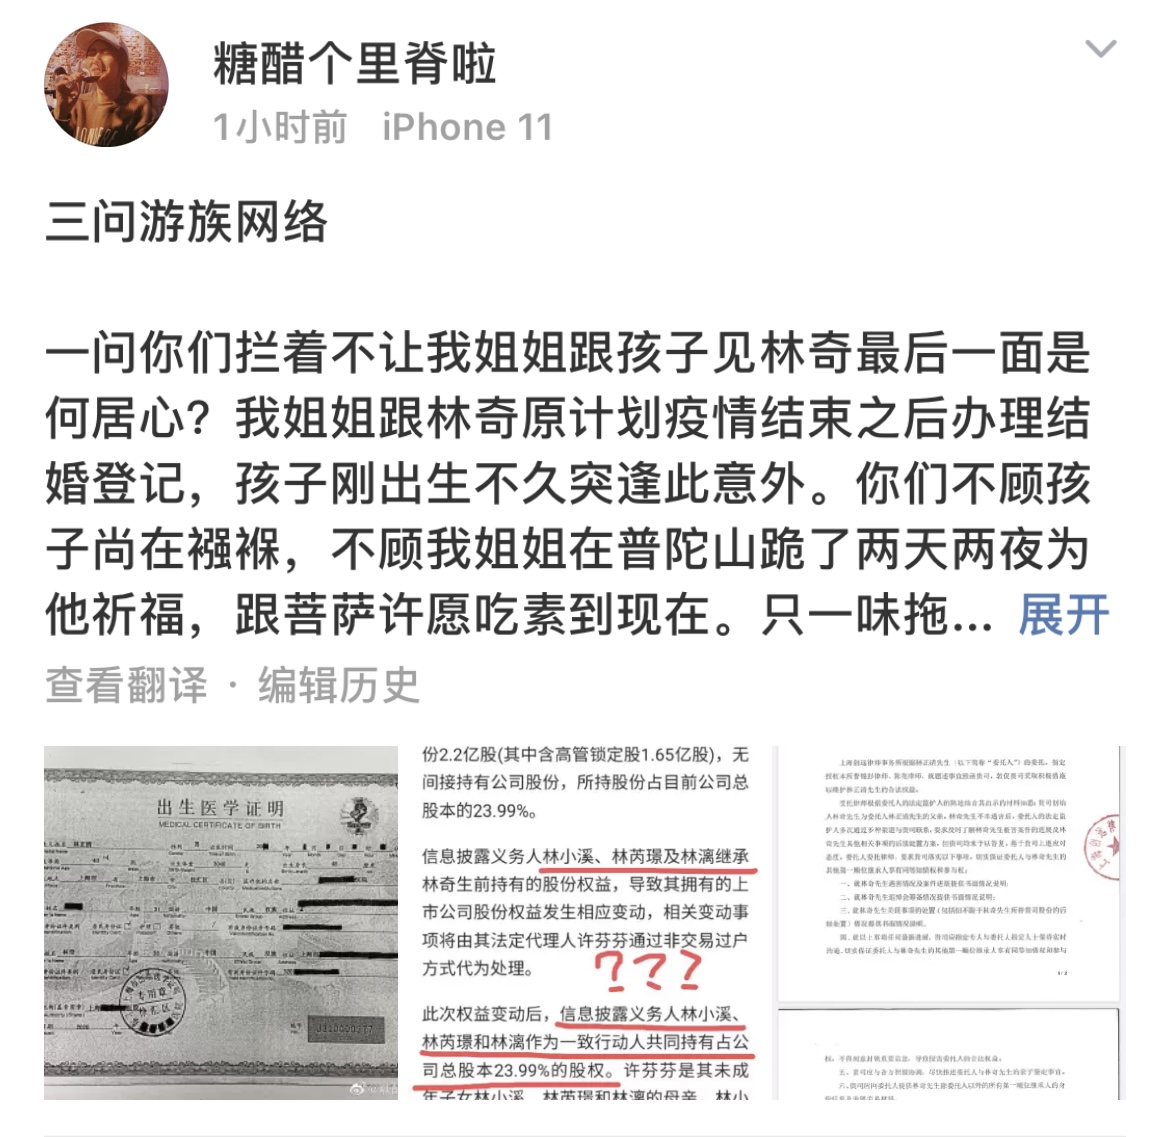 游族网络实控人变更 已逝前董事长林奇疑曝有非婚生子女